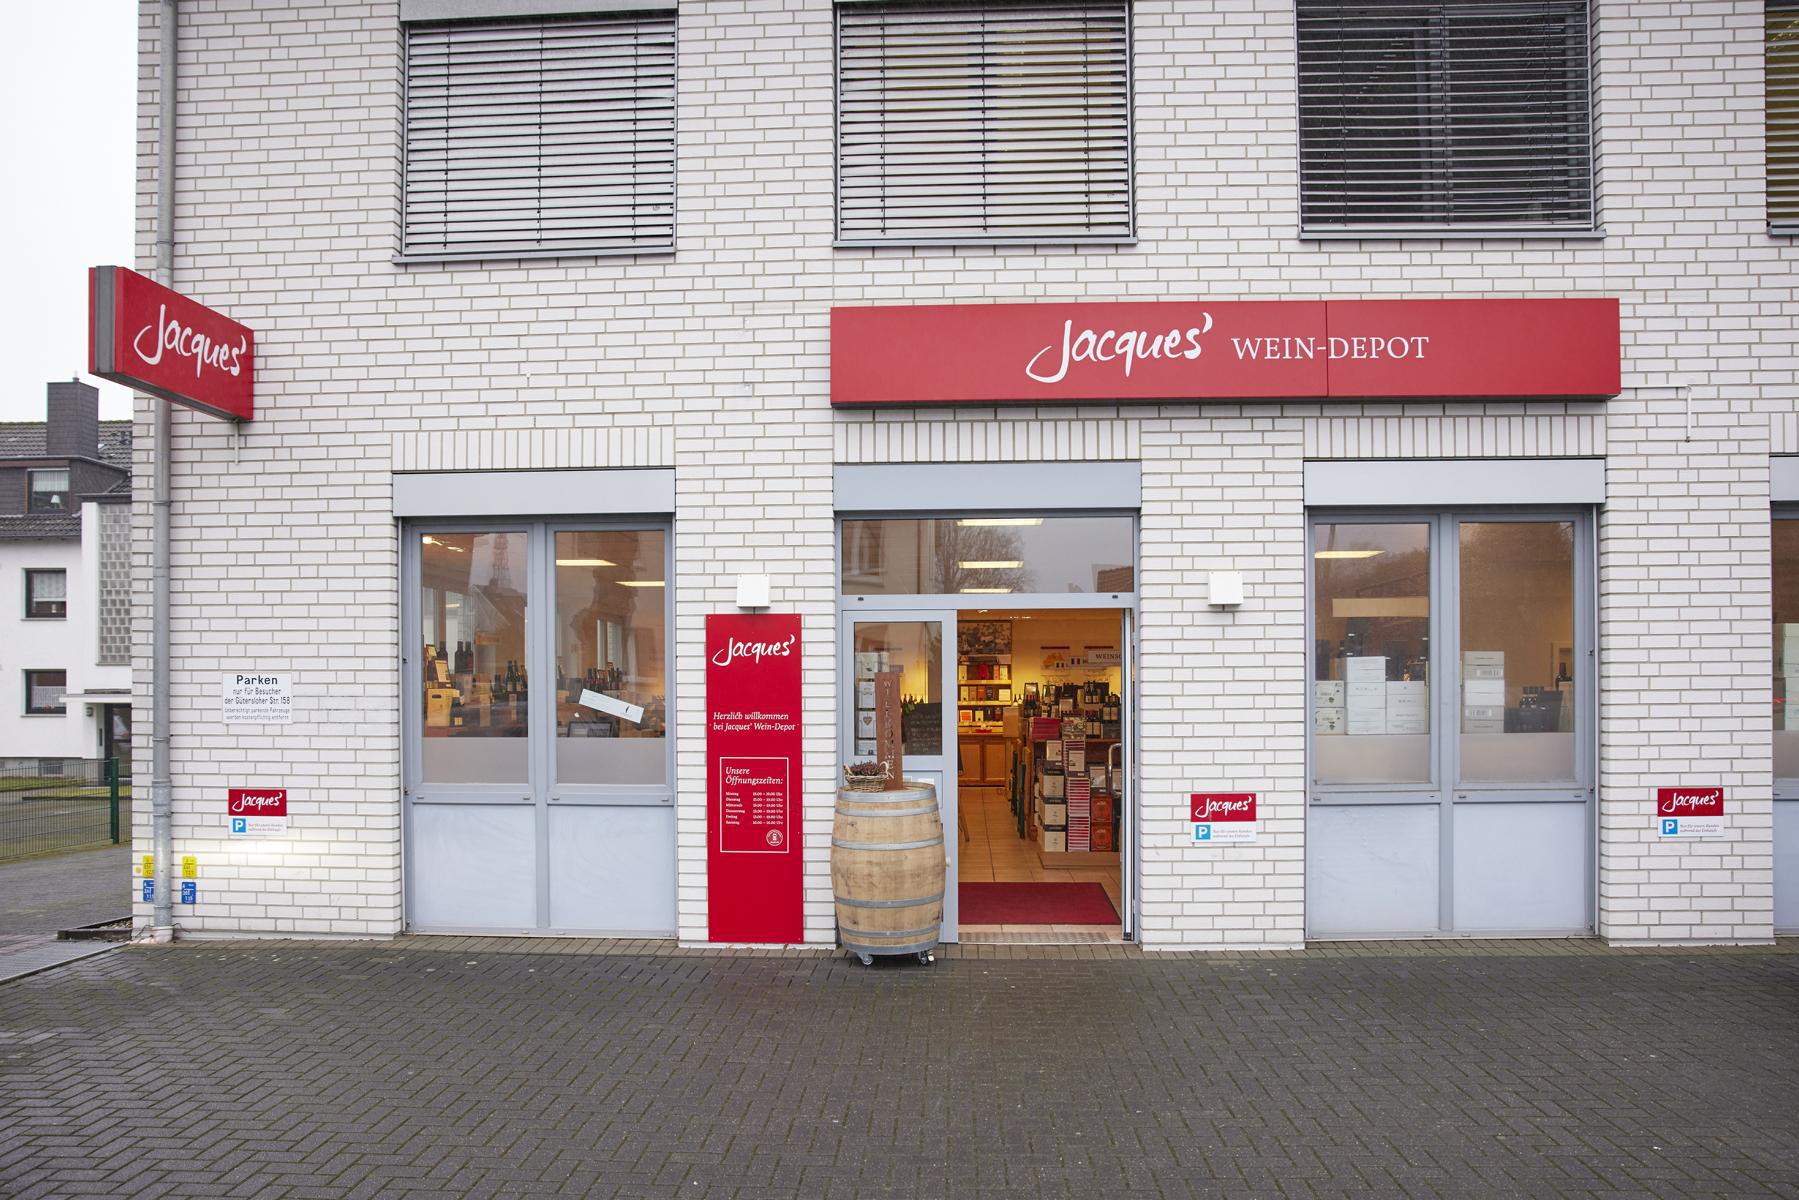 Bild 2 Jacques’ Wein-Depot Bielefeld-Brackwede in Bielefeld